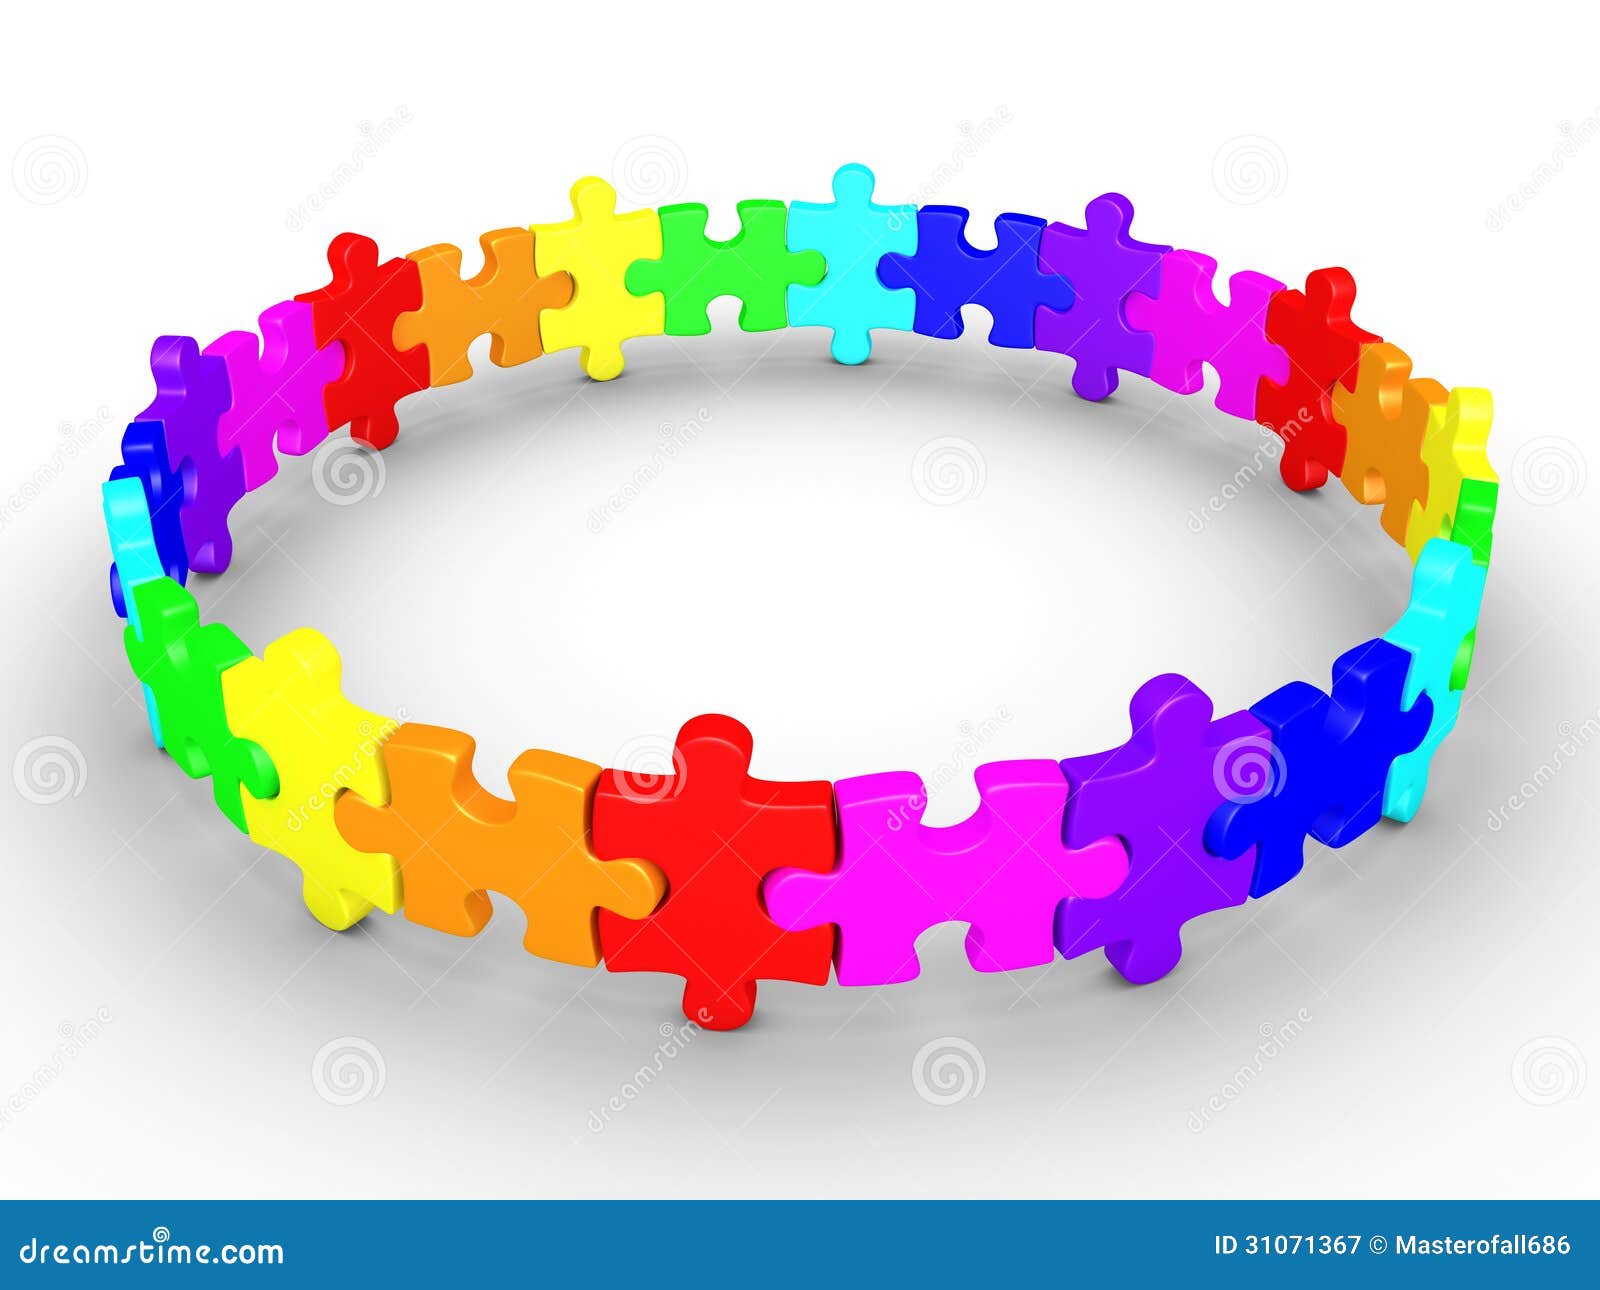 Puzzle pieces connected form a circle. 3d puzzle pieces are connected and form a circle